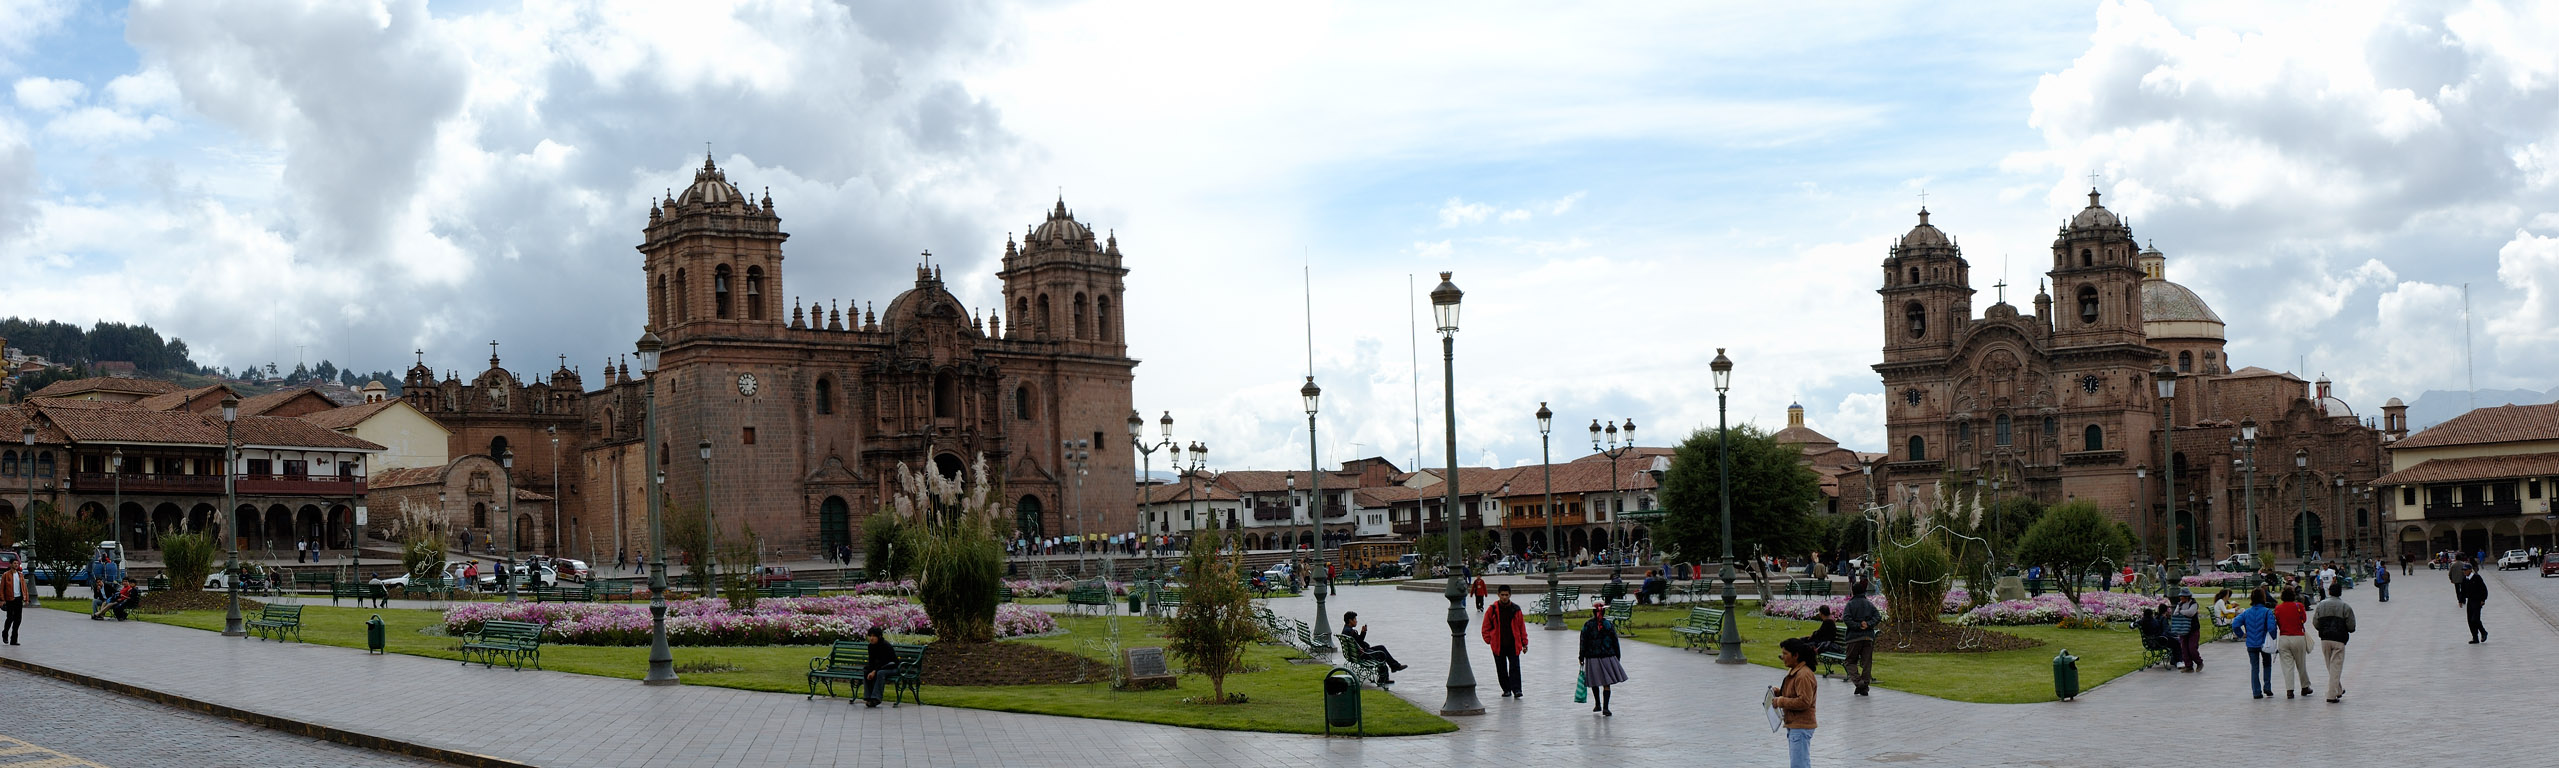 Plaza_de_Armas_de_Cuzco